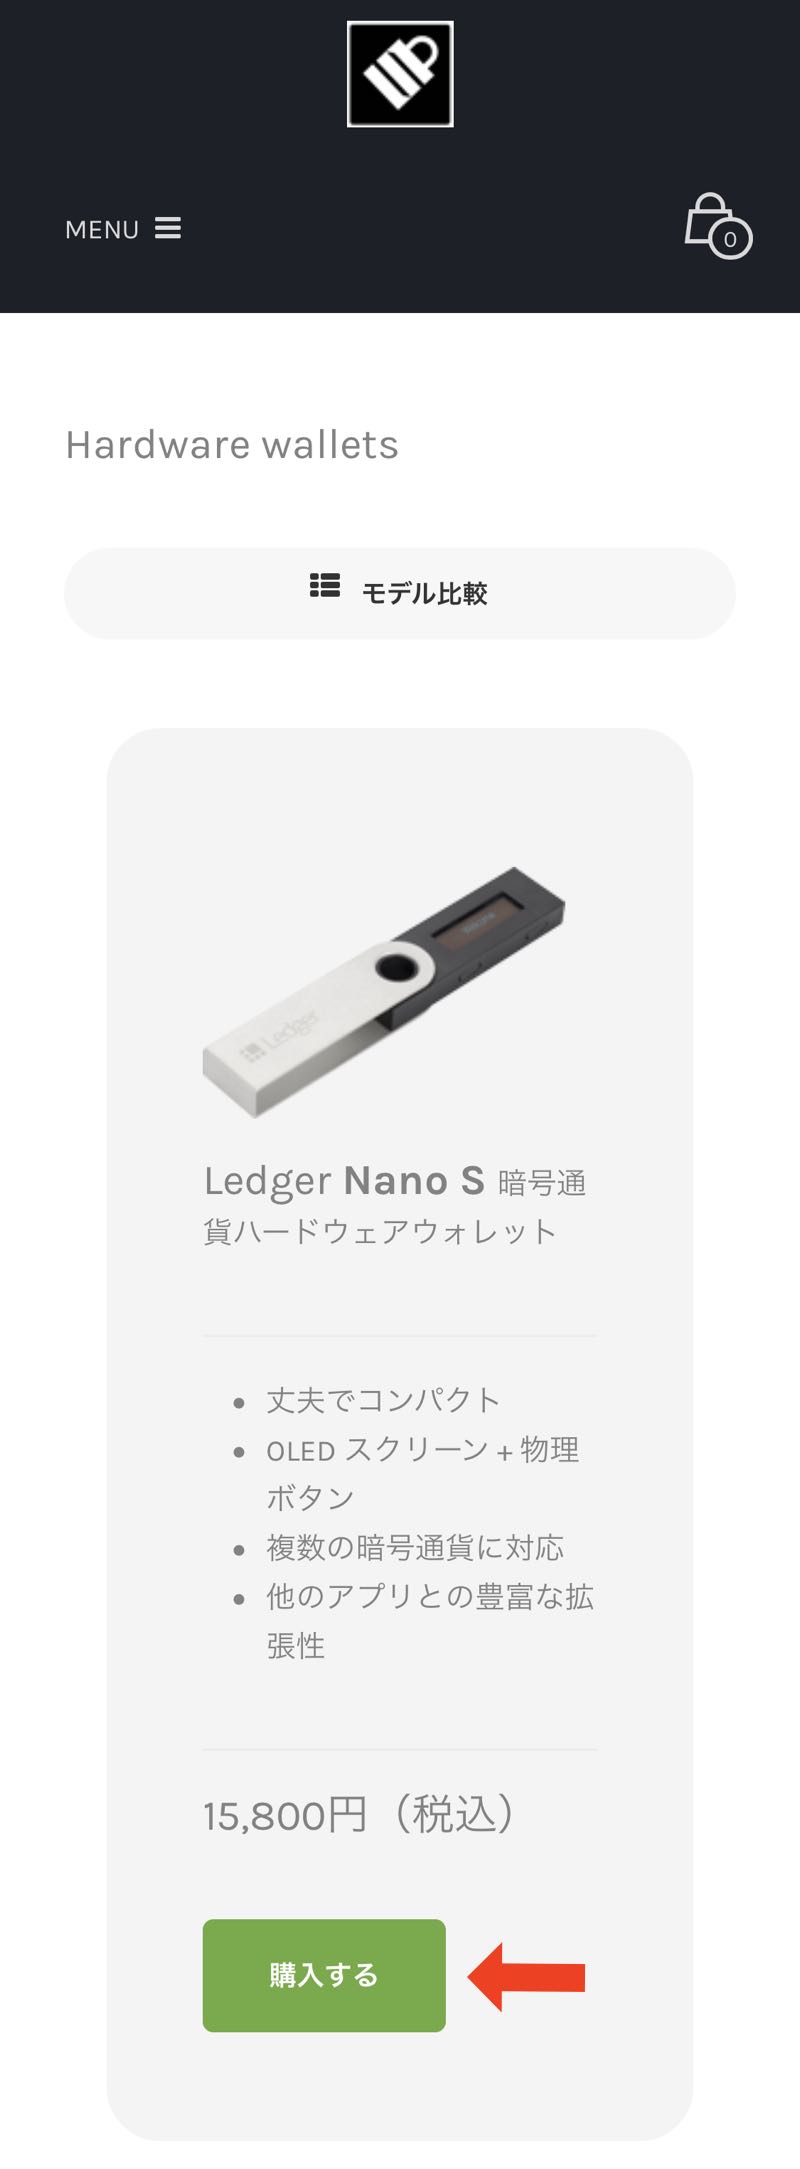 Ledger nano S（レジャーナノS）を日本代理店で購入